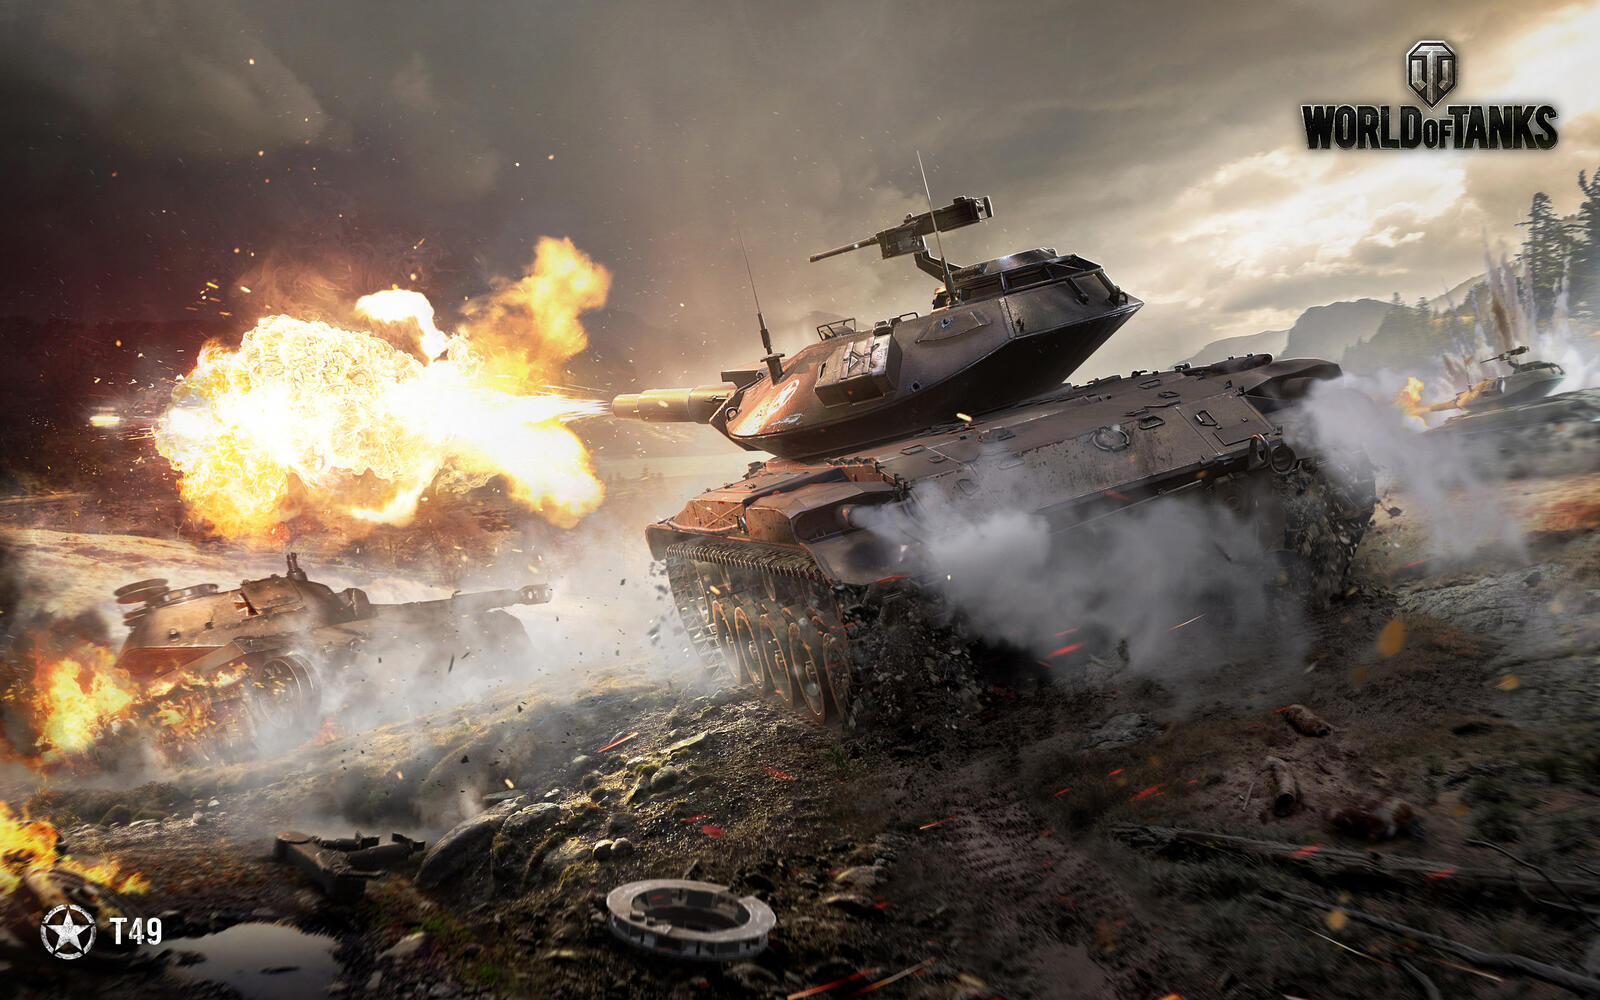 Бесплатное фото Заставка с изображением легкого танка из игры мир танков